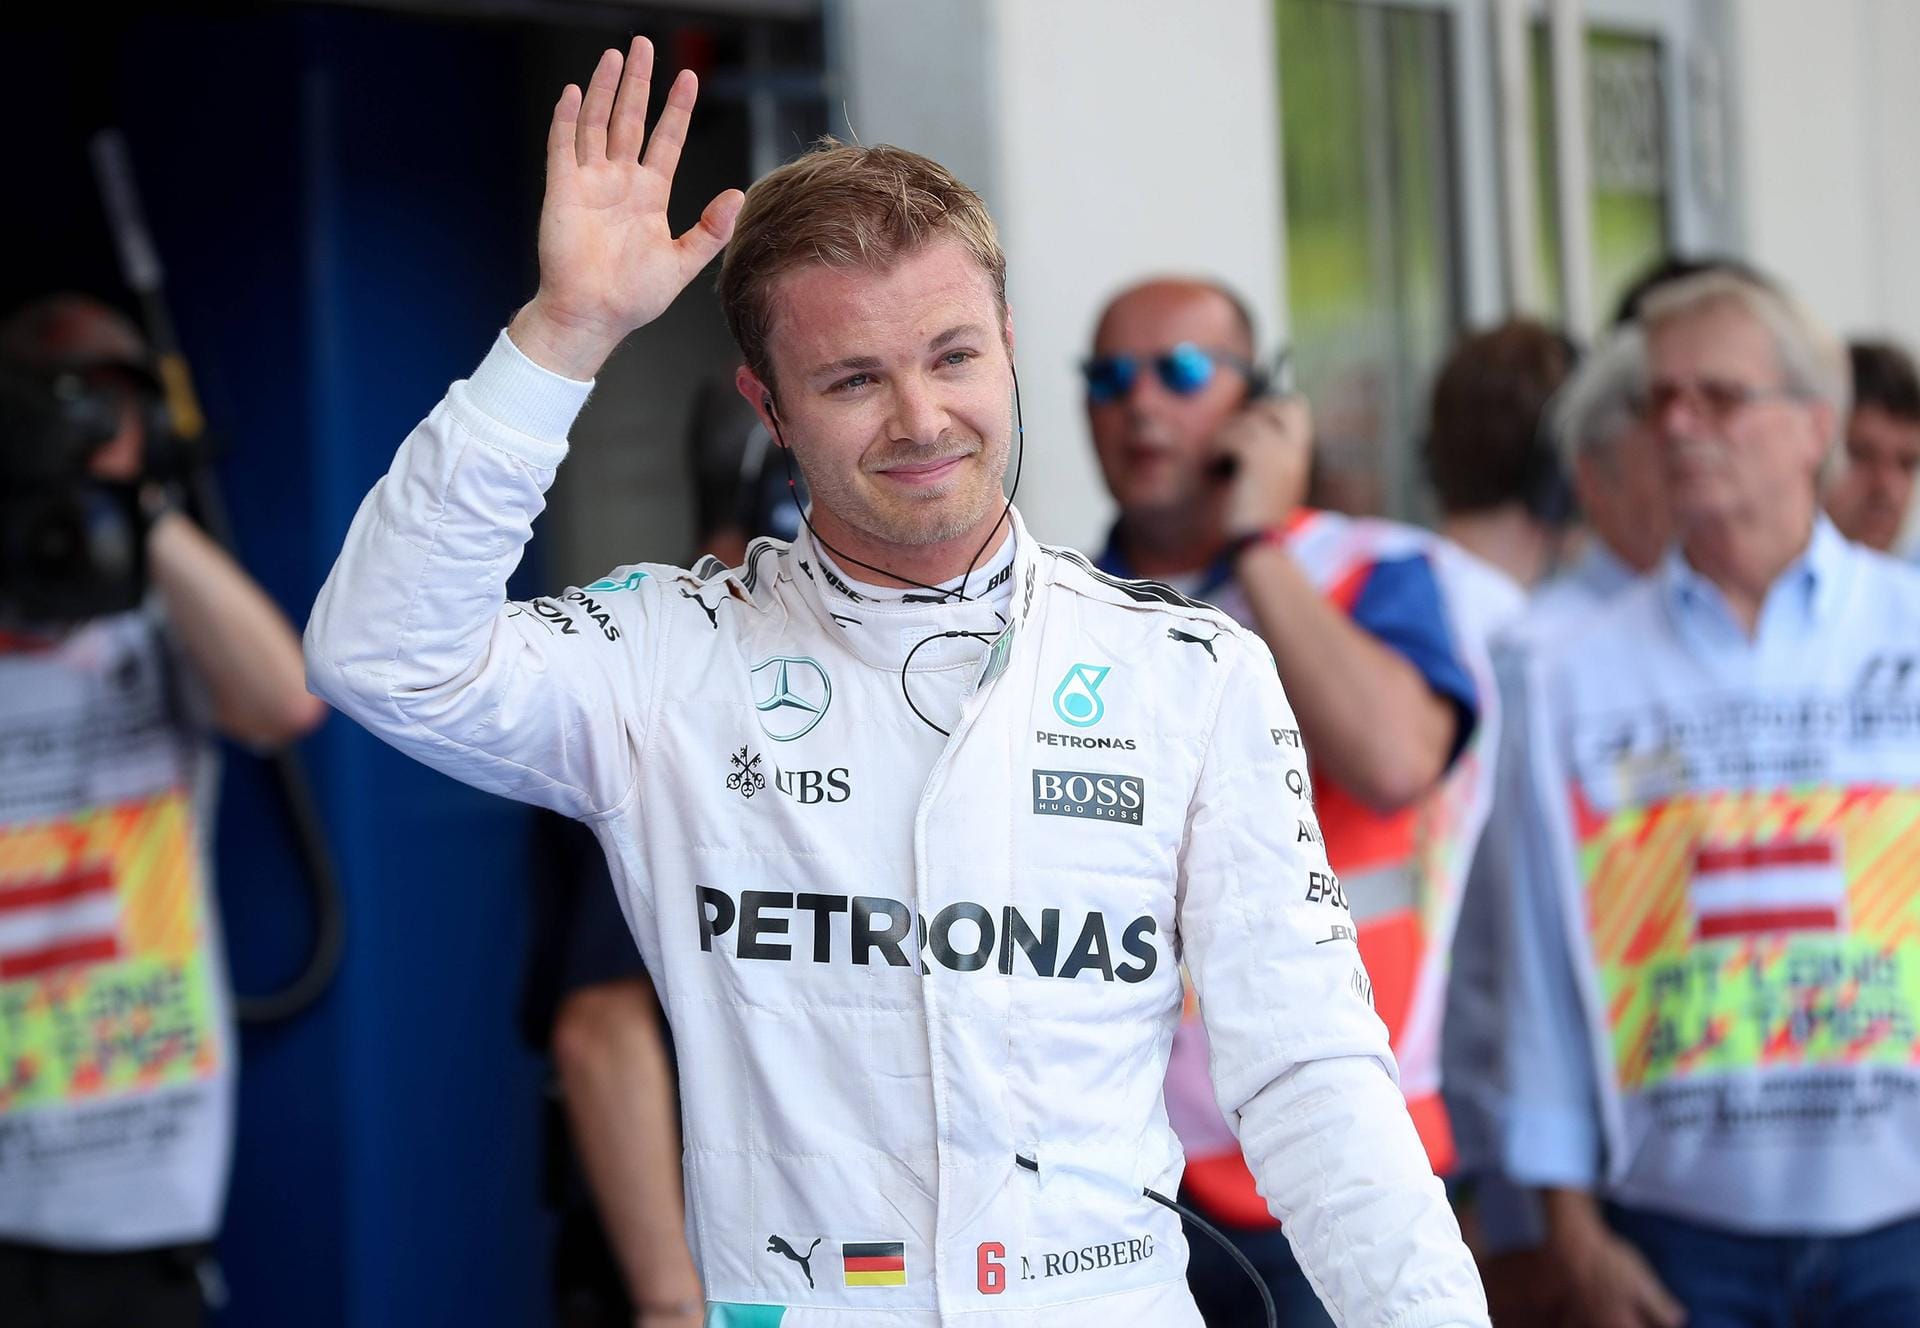 Auch Formel-1-Fahrer Nico Rosberg verfolgte das Halbfinale. Er gratulierte der französischen Mannschaft und schrieb auf Twitter: "Wirklich schade. Toll gekämpft und gespielt, Jungs."